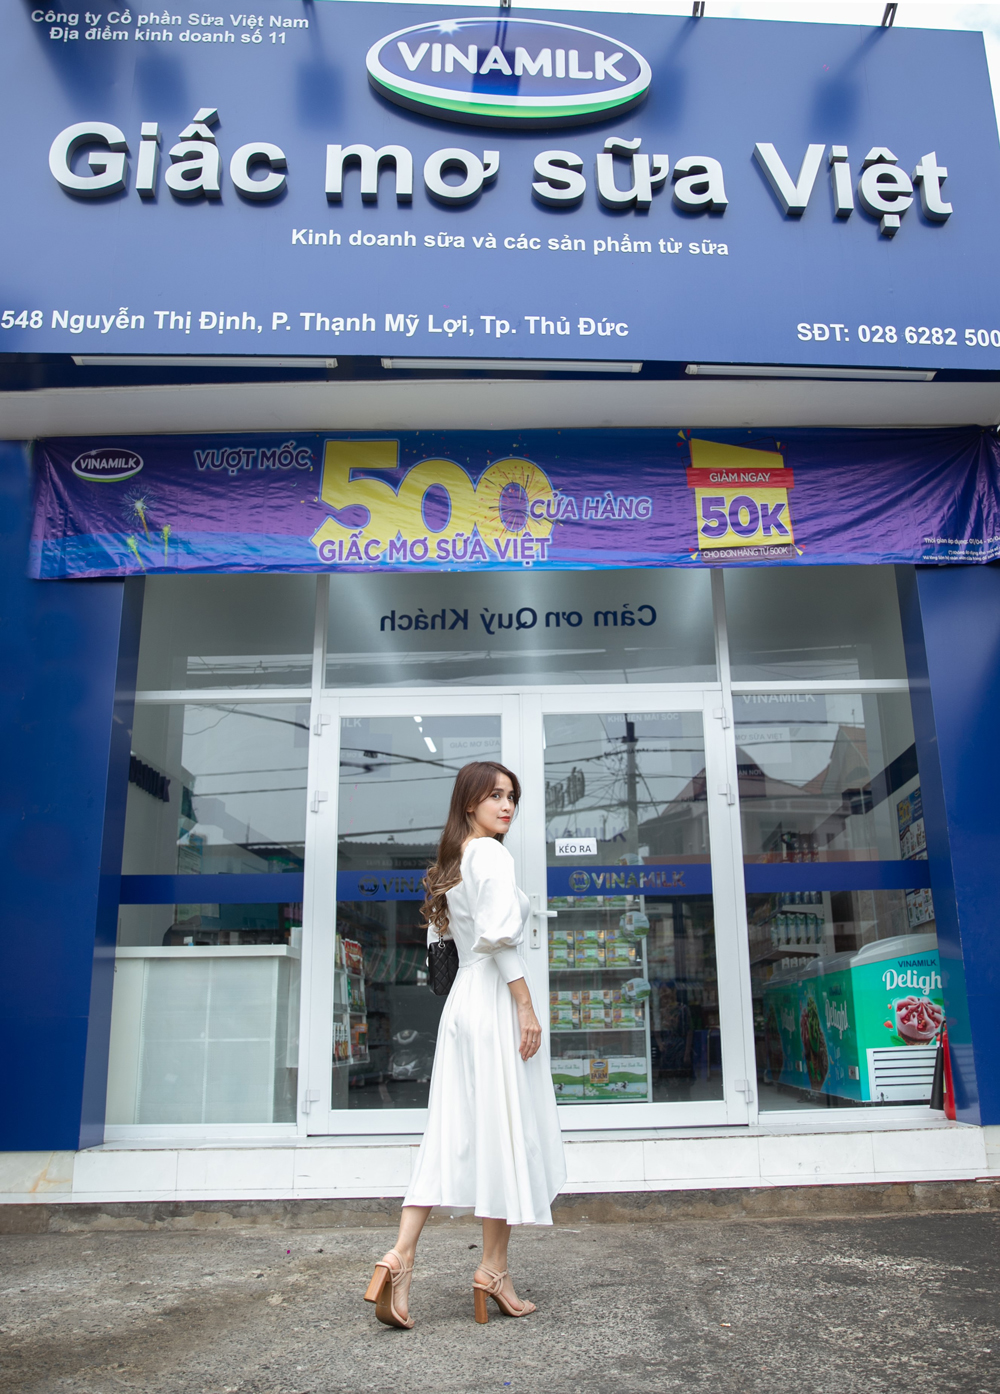 Với nữ diễn viên Tú Vi, cửa hàng Vinamilk Giấc Mơ Sữa Việt là một “thiên đường” mua sắm đa dạng các sản phẩm sữa chất lượng của Vinamilk dành cho cả gia đình 